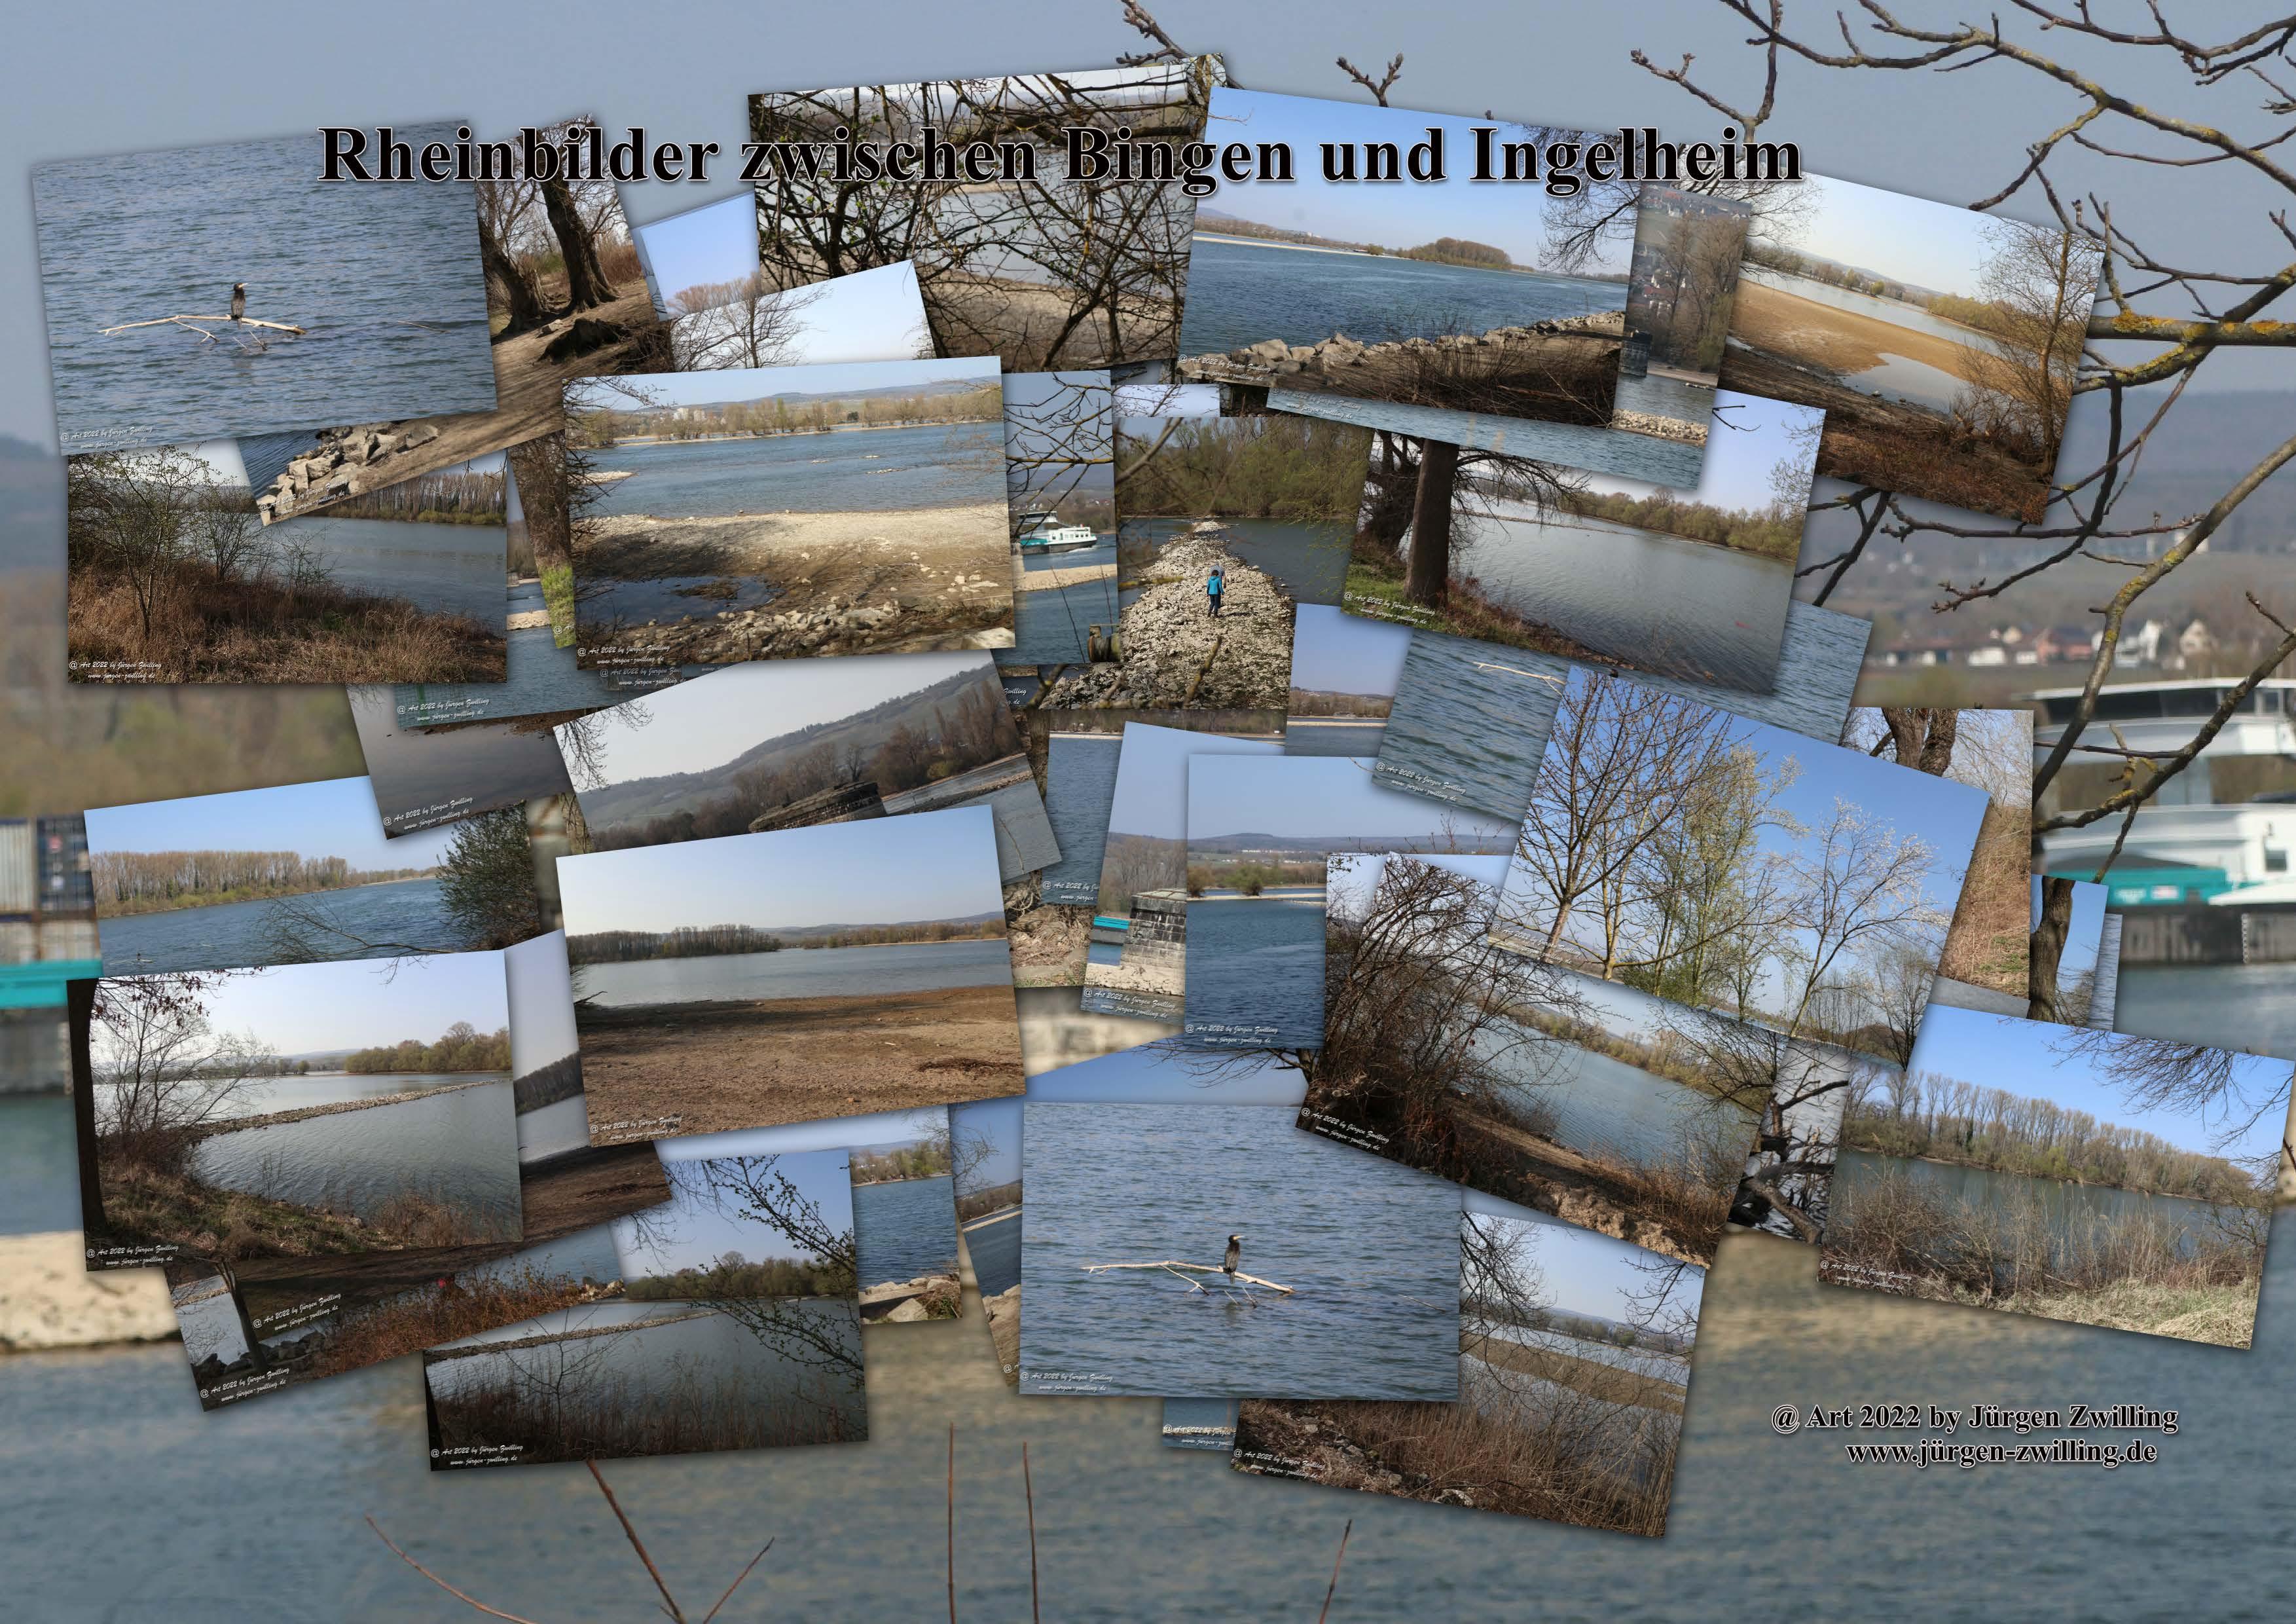 Rheinbilder zwischen Bingen und Ingelheim - Rheinhessen